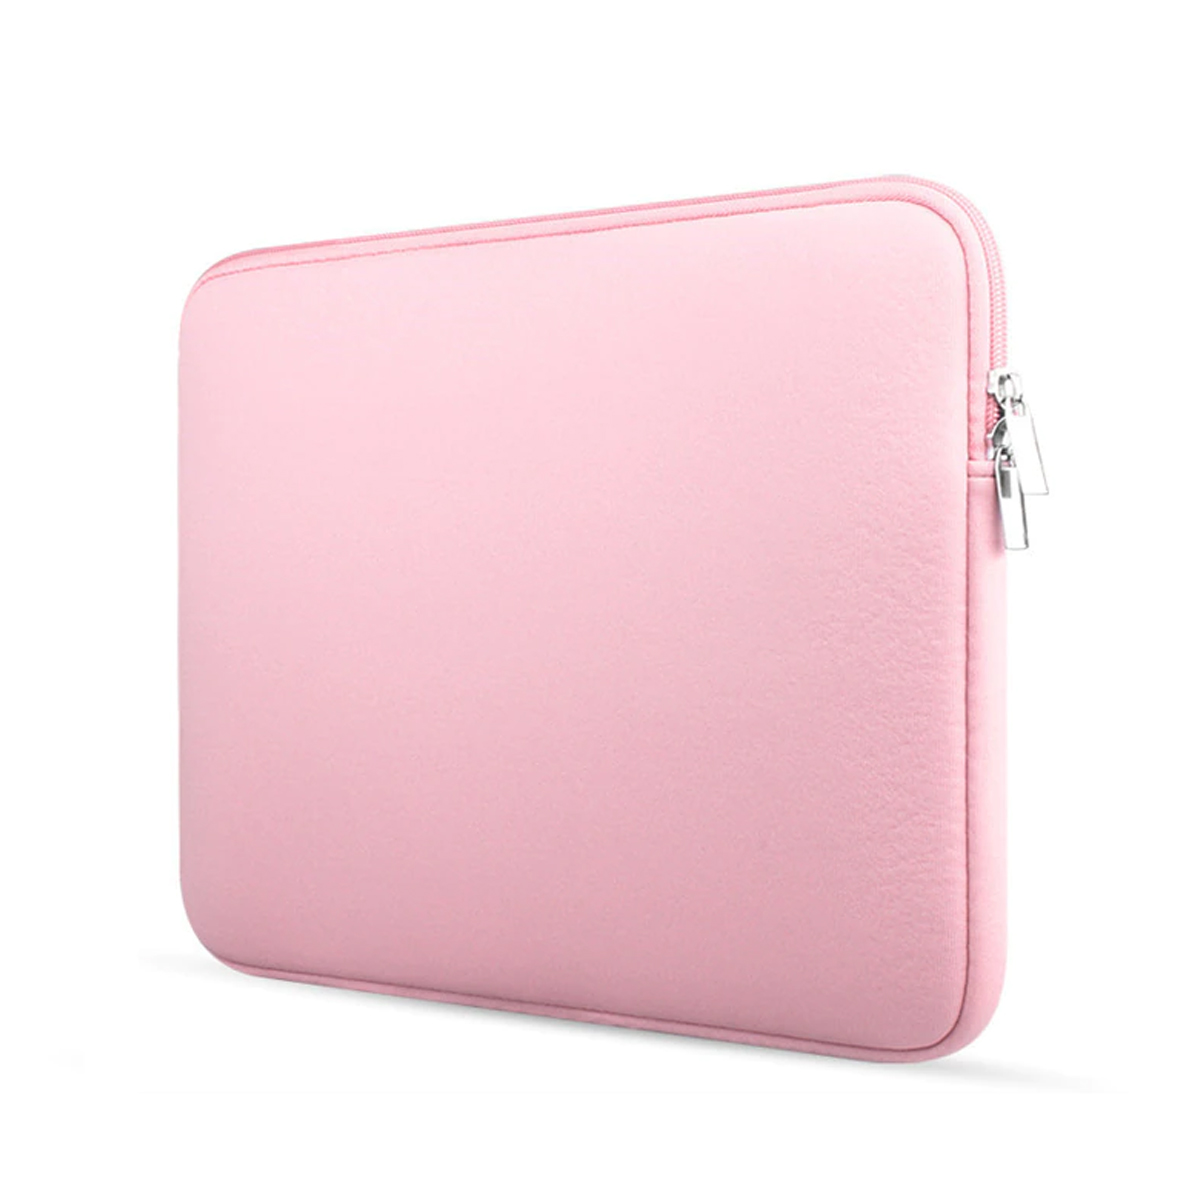 Ongemak racket Masaccio Laptop en Macbook Sleeve - 13.3 inch - Roze | Case2go.nl